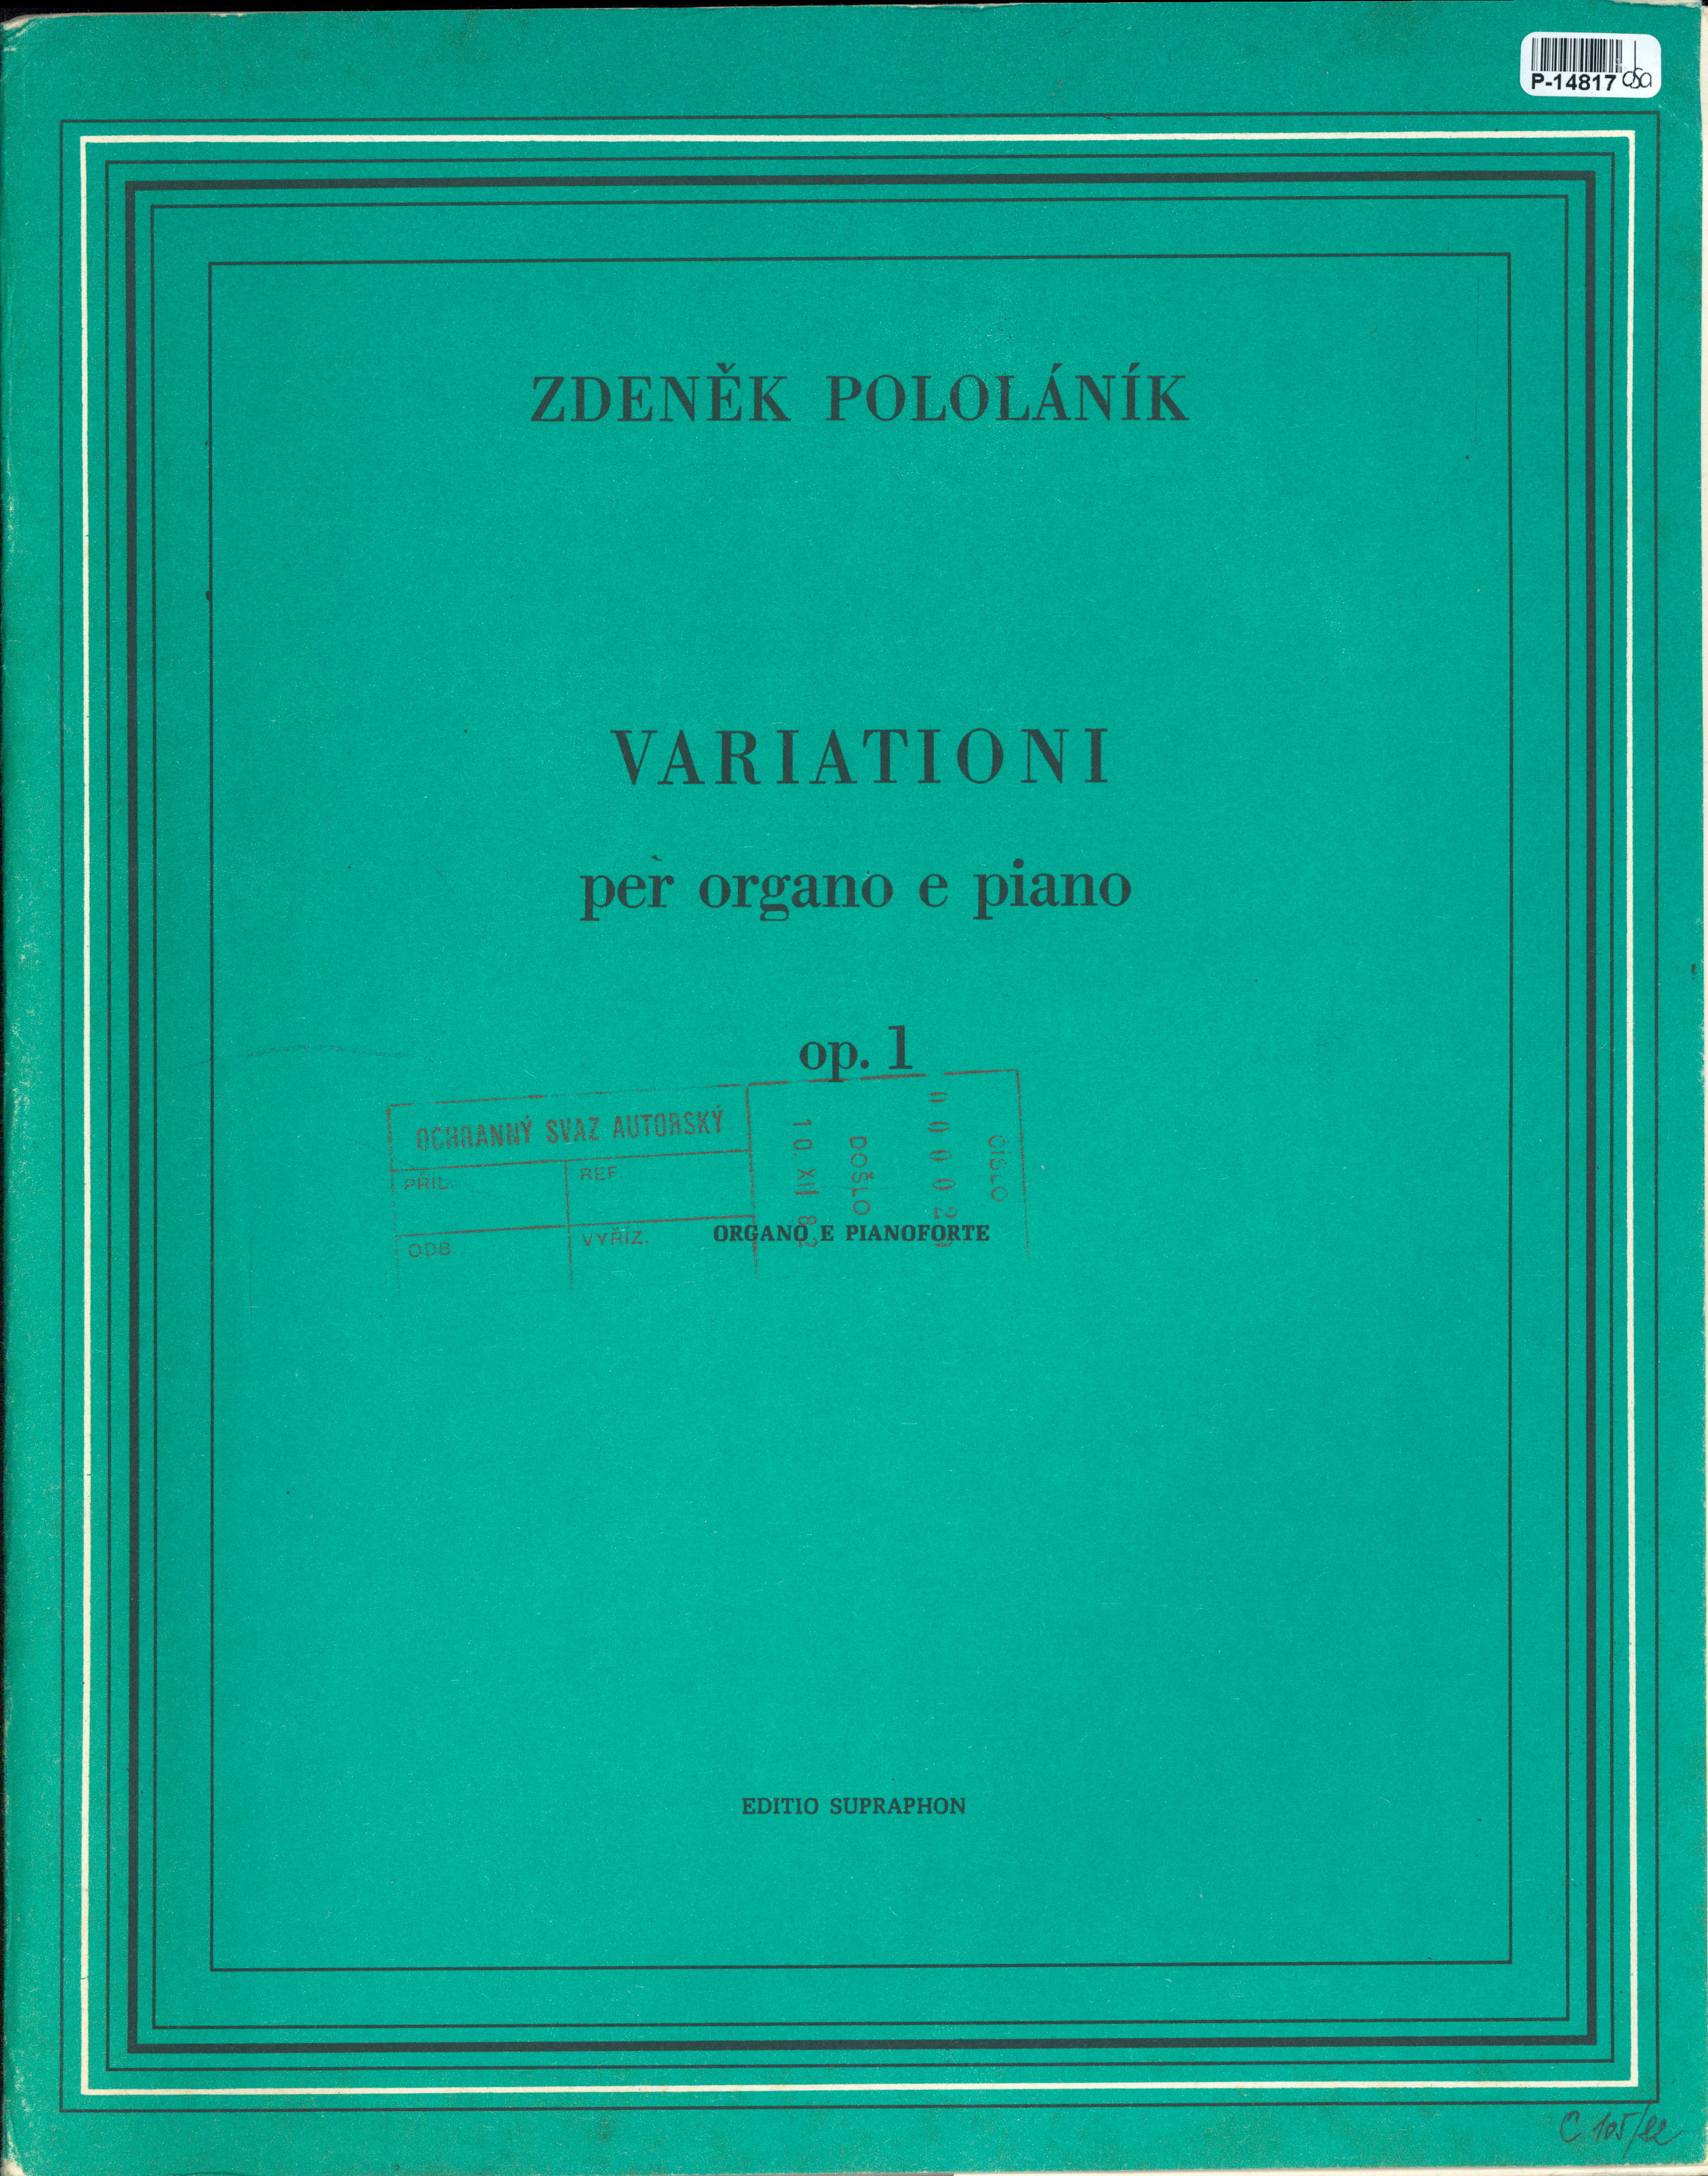 Variationi per organo e piano